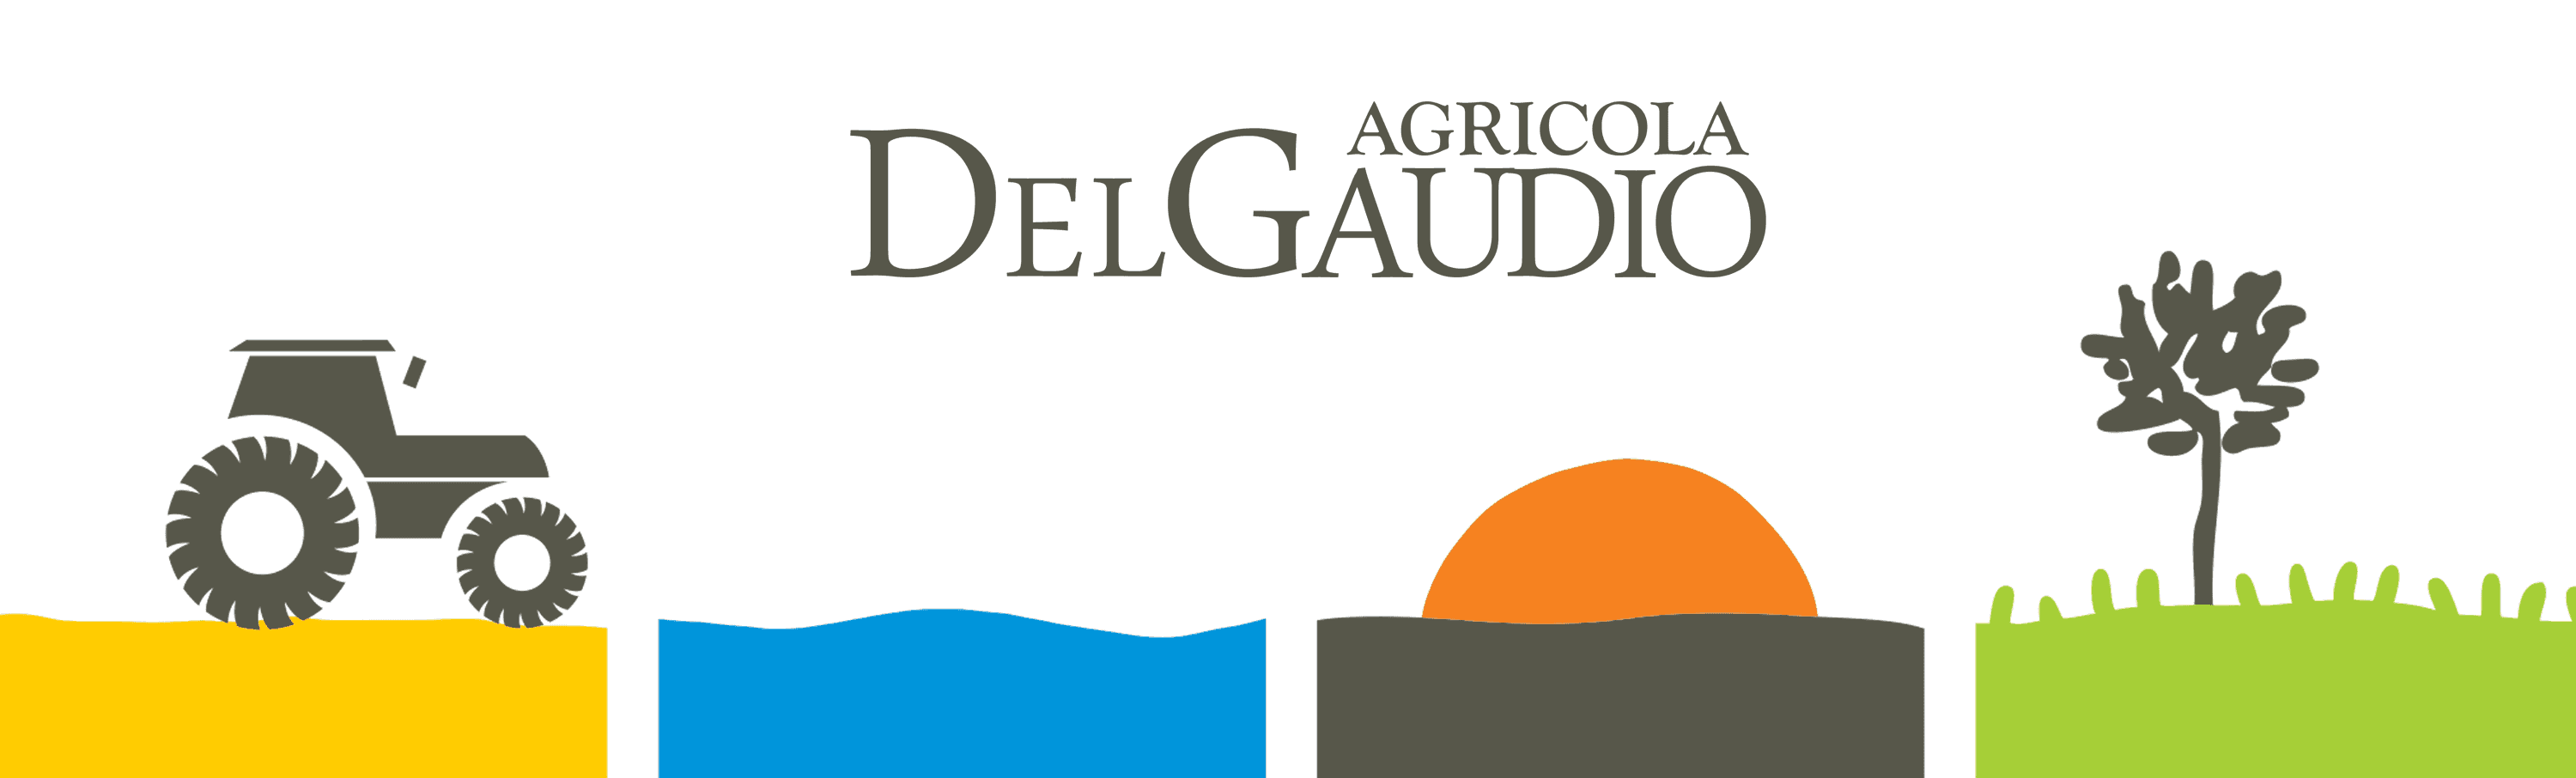 Agricola Del Gaudio